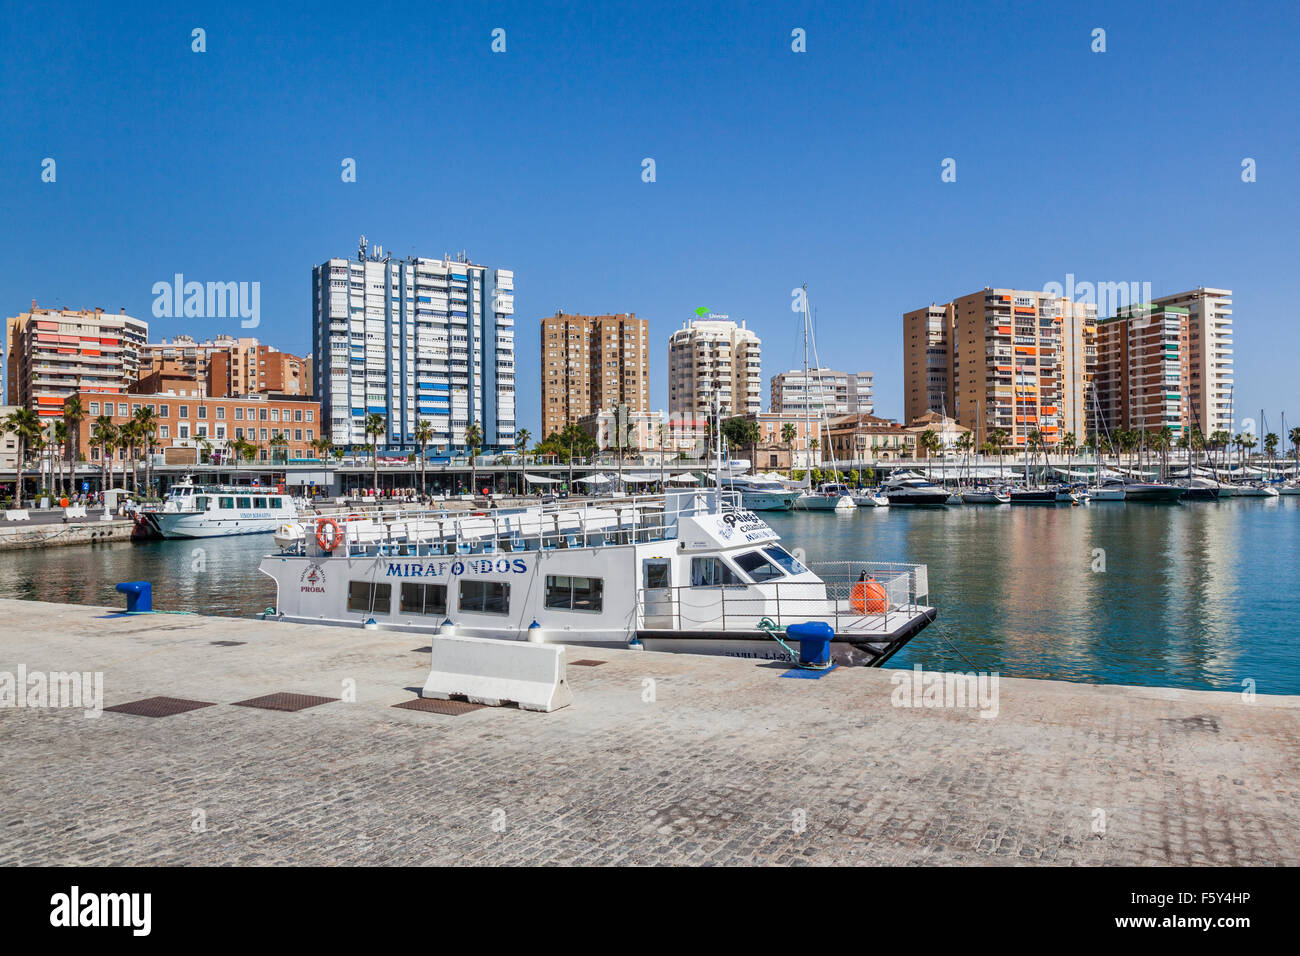 Visite turistiche a tourboat Muelle Dos, porto di Malaga, Costa del Sol, Andalusia, Spagna Foto Stock